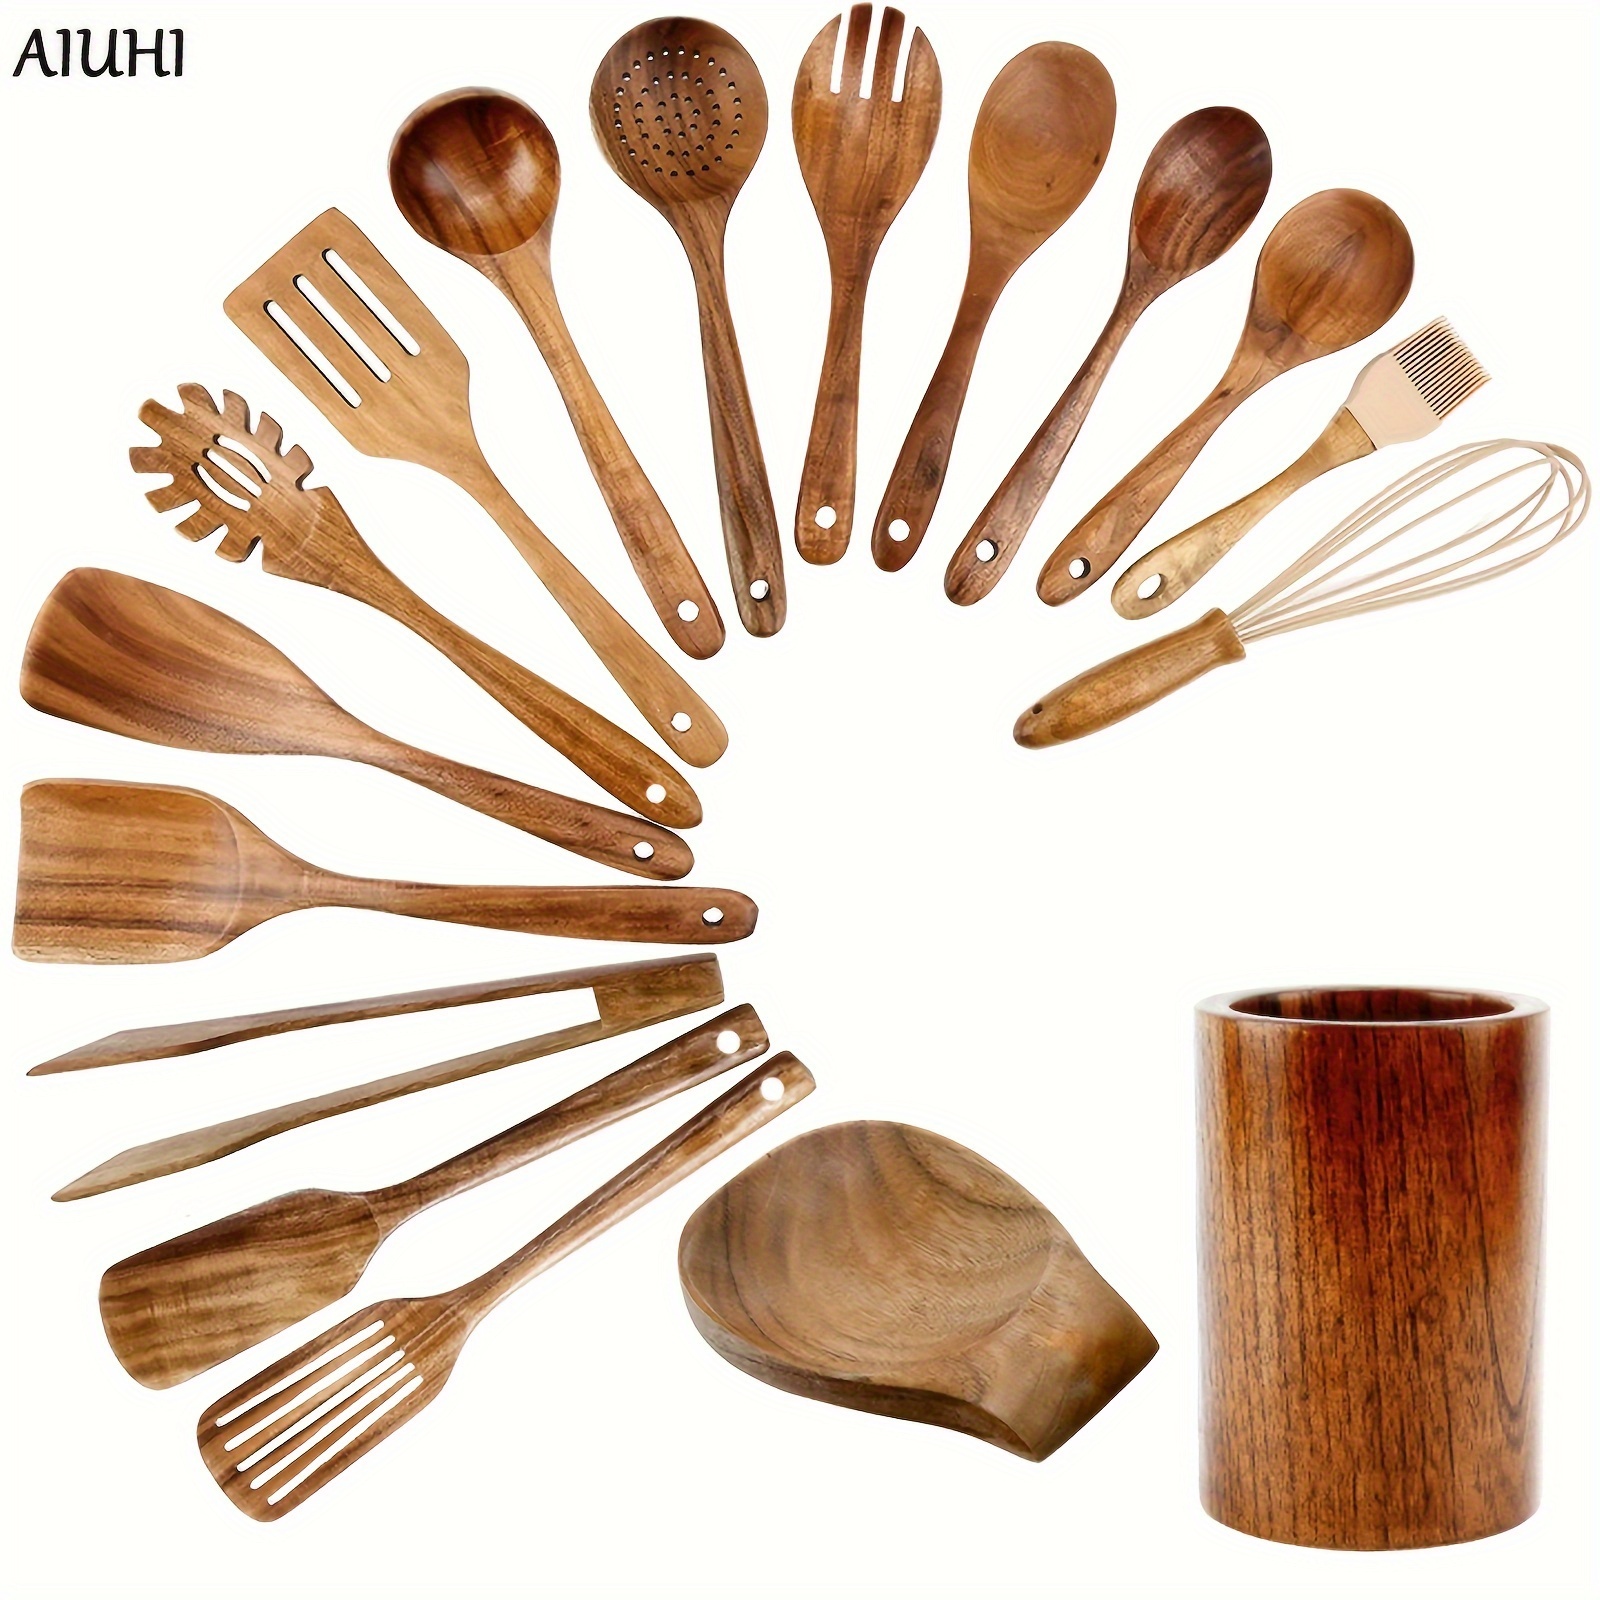 Bamboo Kitchen Utensils Set 8-Pack - Wooden Cooking Utensils for Nonstick  Cookware - Wooden Cooking Spoons, Spatulas, Turner, Tongs, Utensil Holder